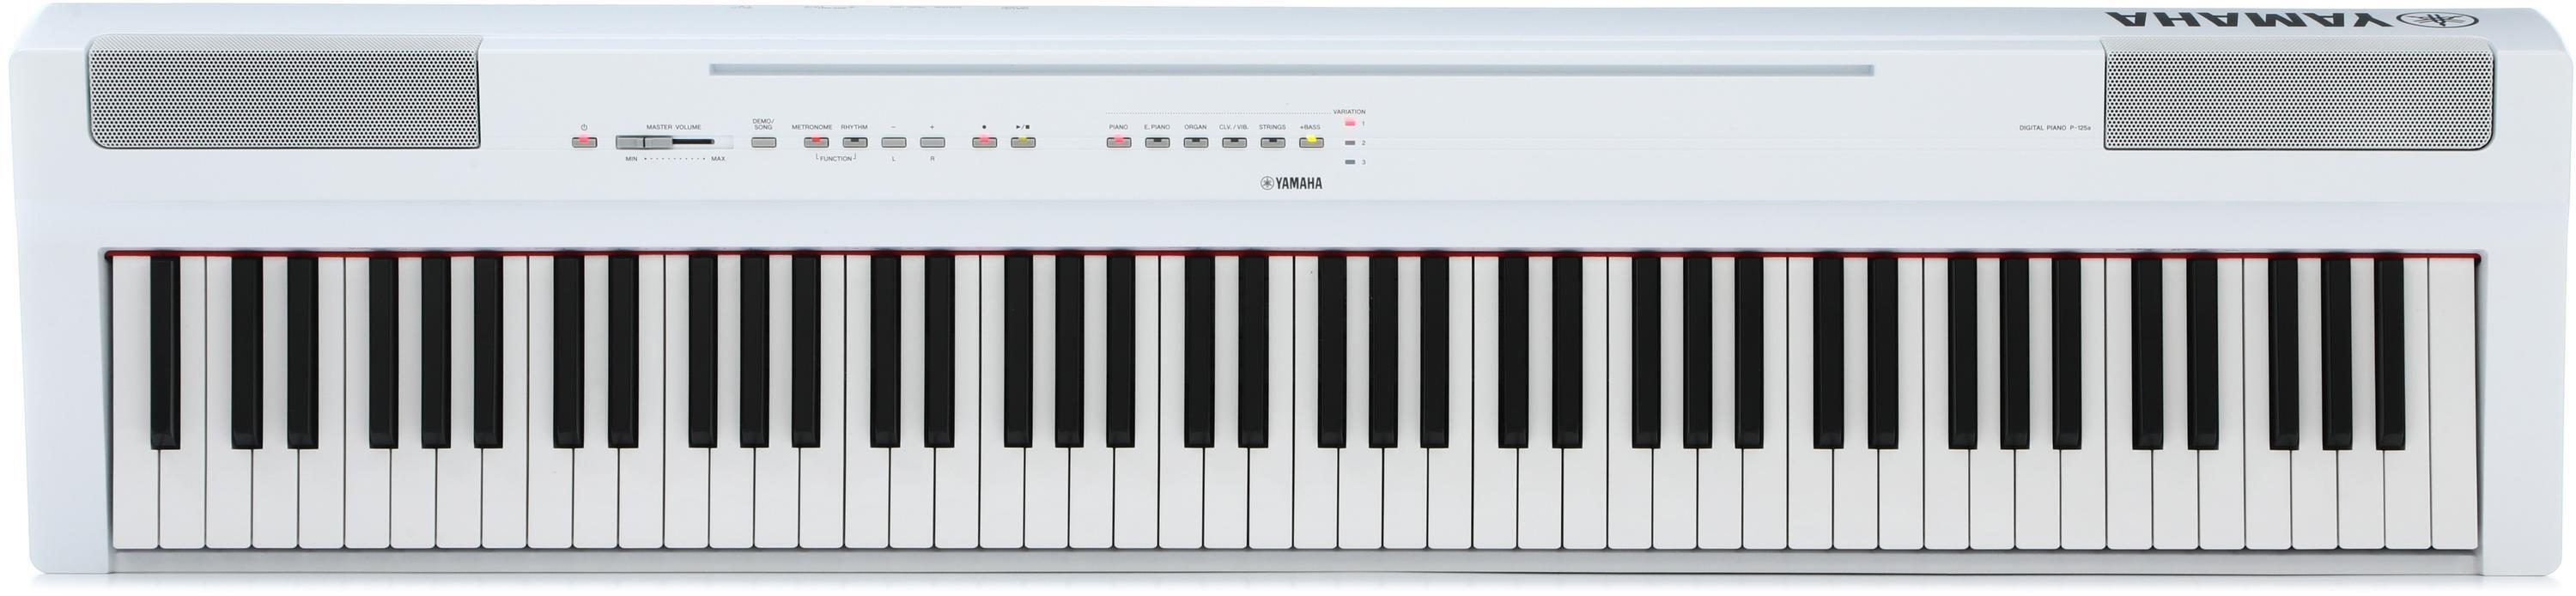 Yamaha P-125a 88-key Digital Piano - White | Sweetwater